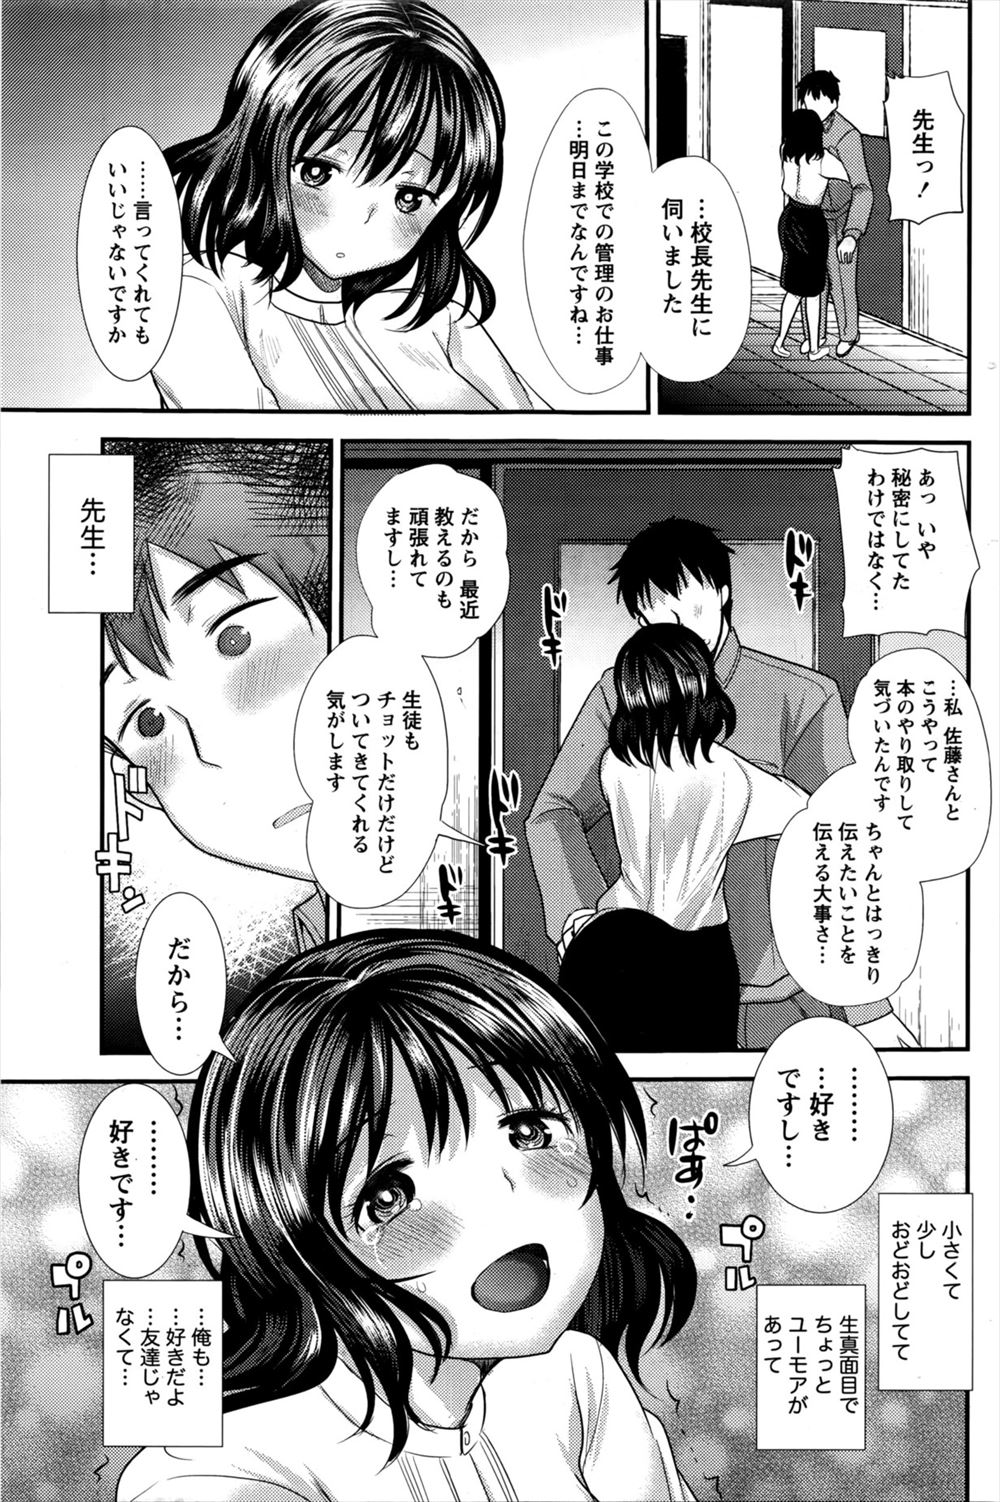 【エロ漫画】専門学校の仕事でかわいい先生に出会い仲良くなった男が、彼女から告白されキスをされいちゃラブ中出しセックスした♡